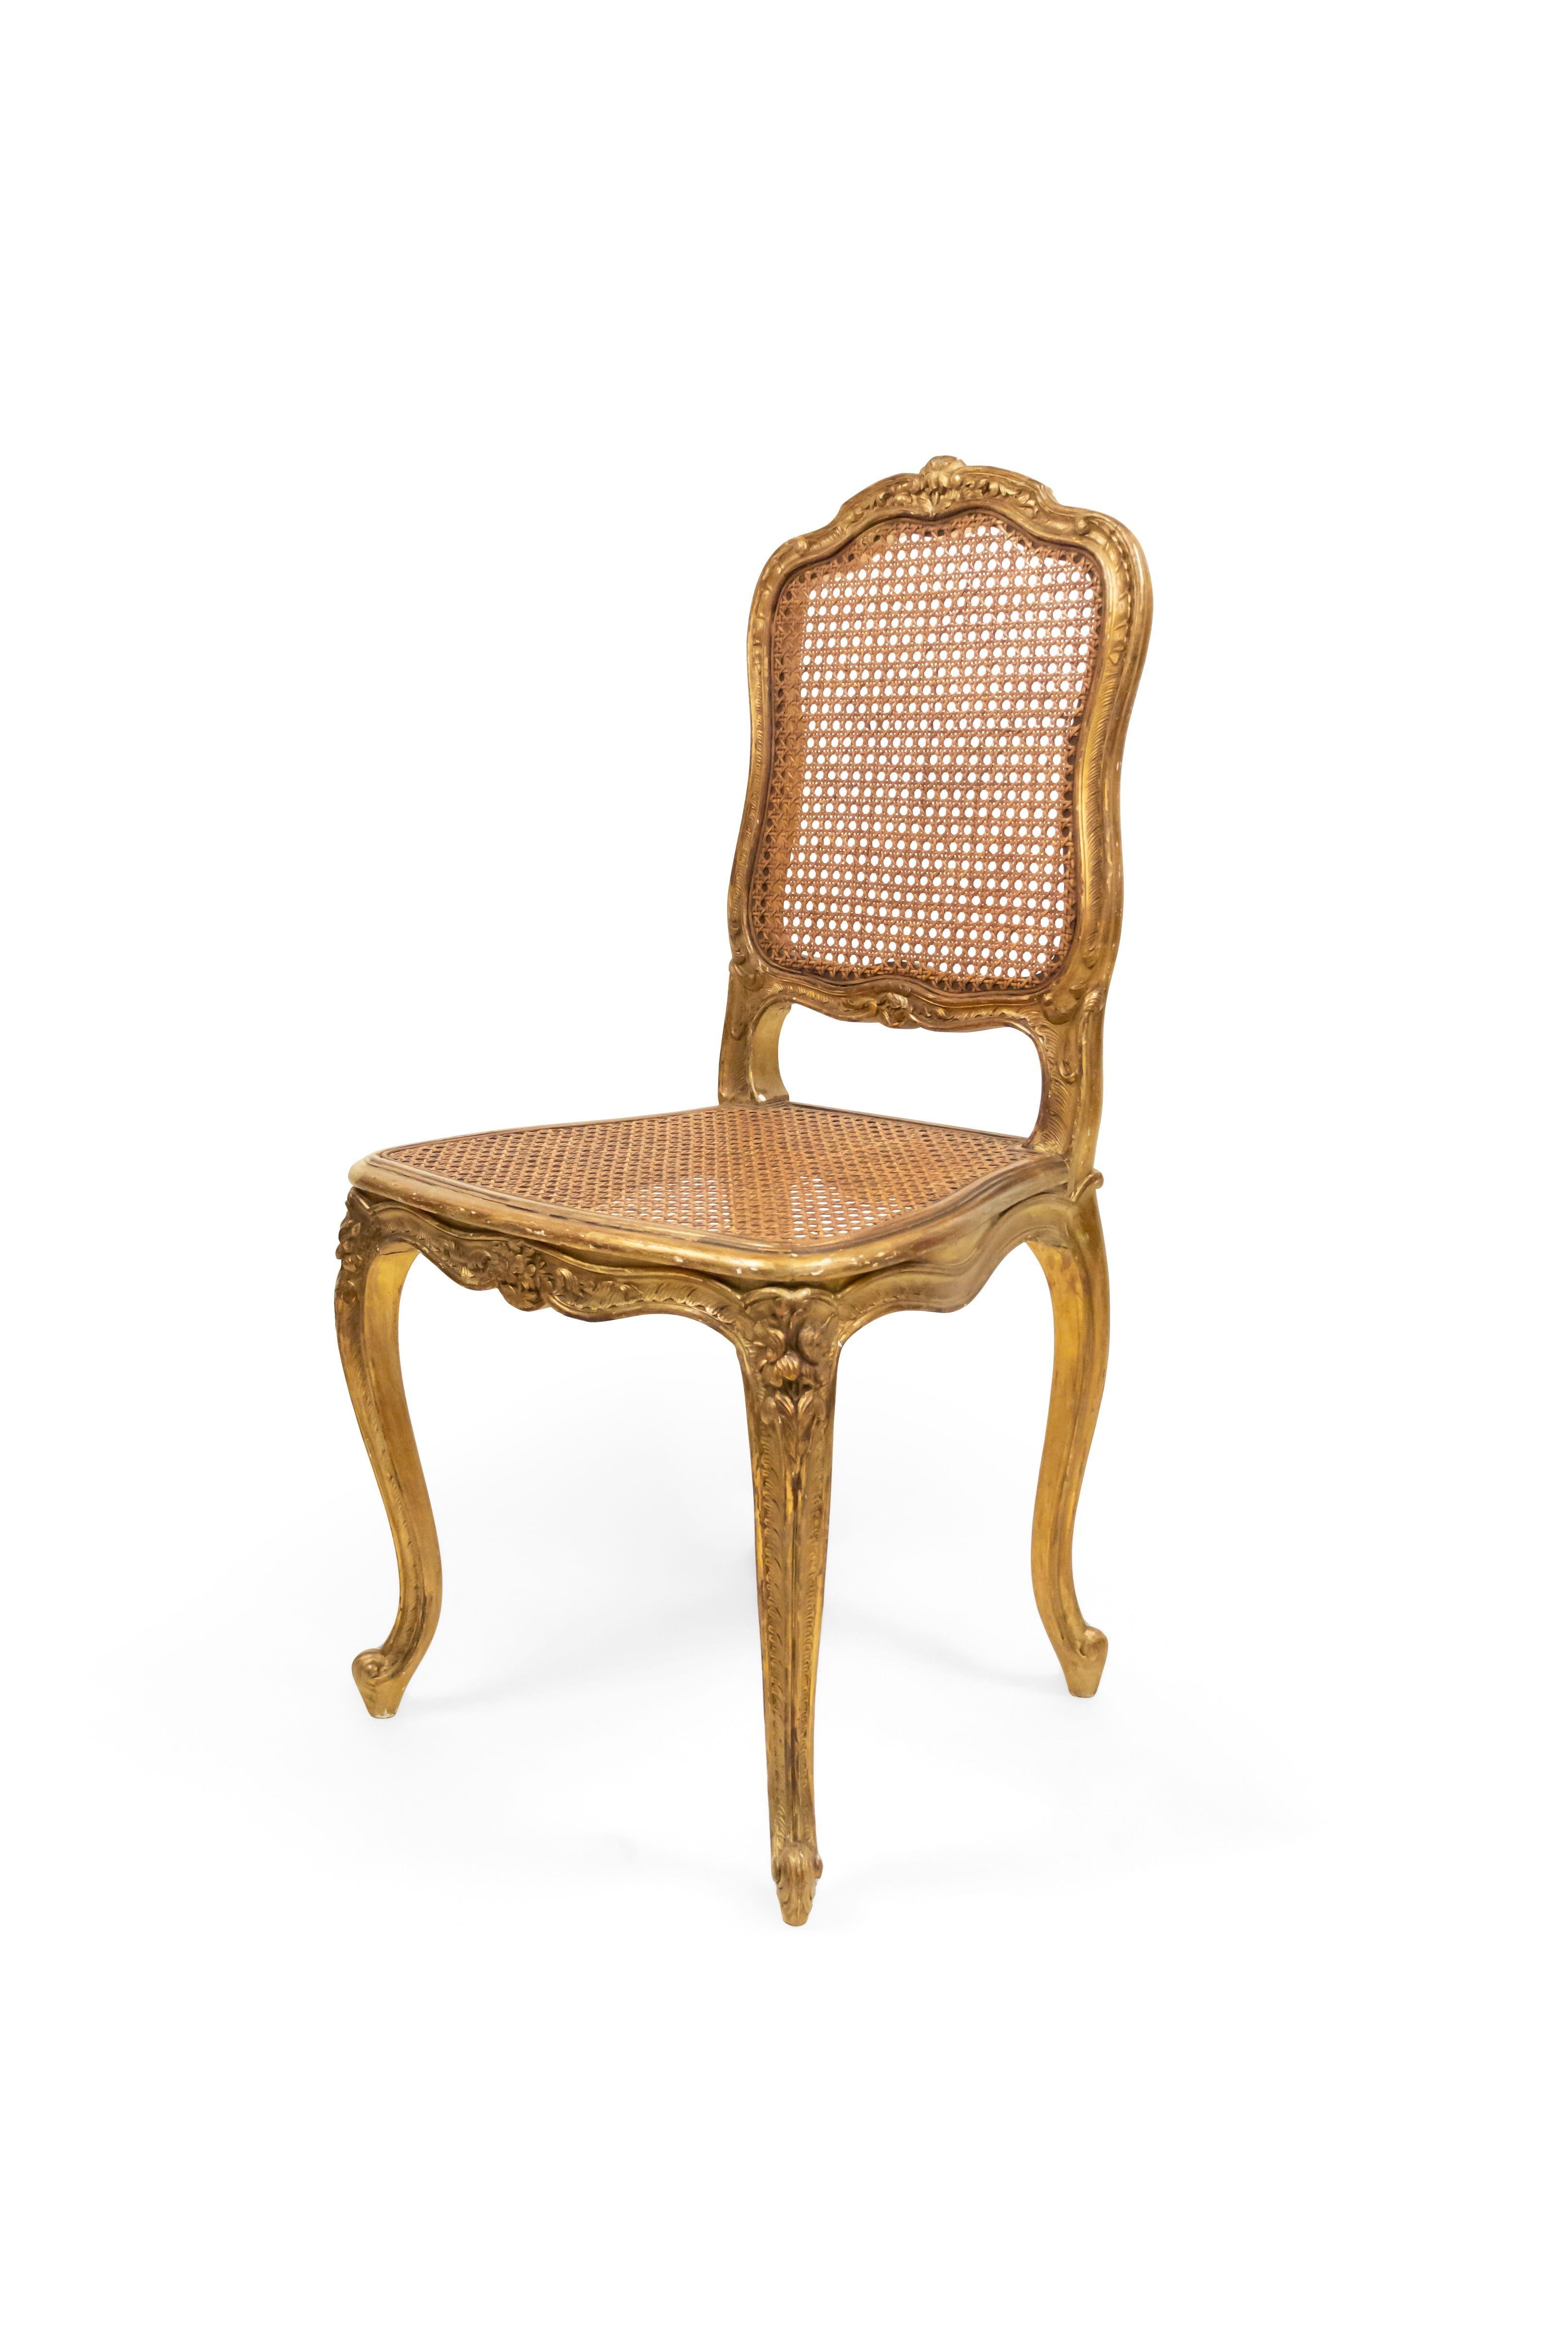 Ensemble de 8 chaises latérales de style Louis XV (19e siècle) avec sièges en rotin.